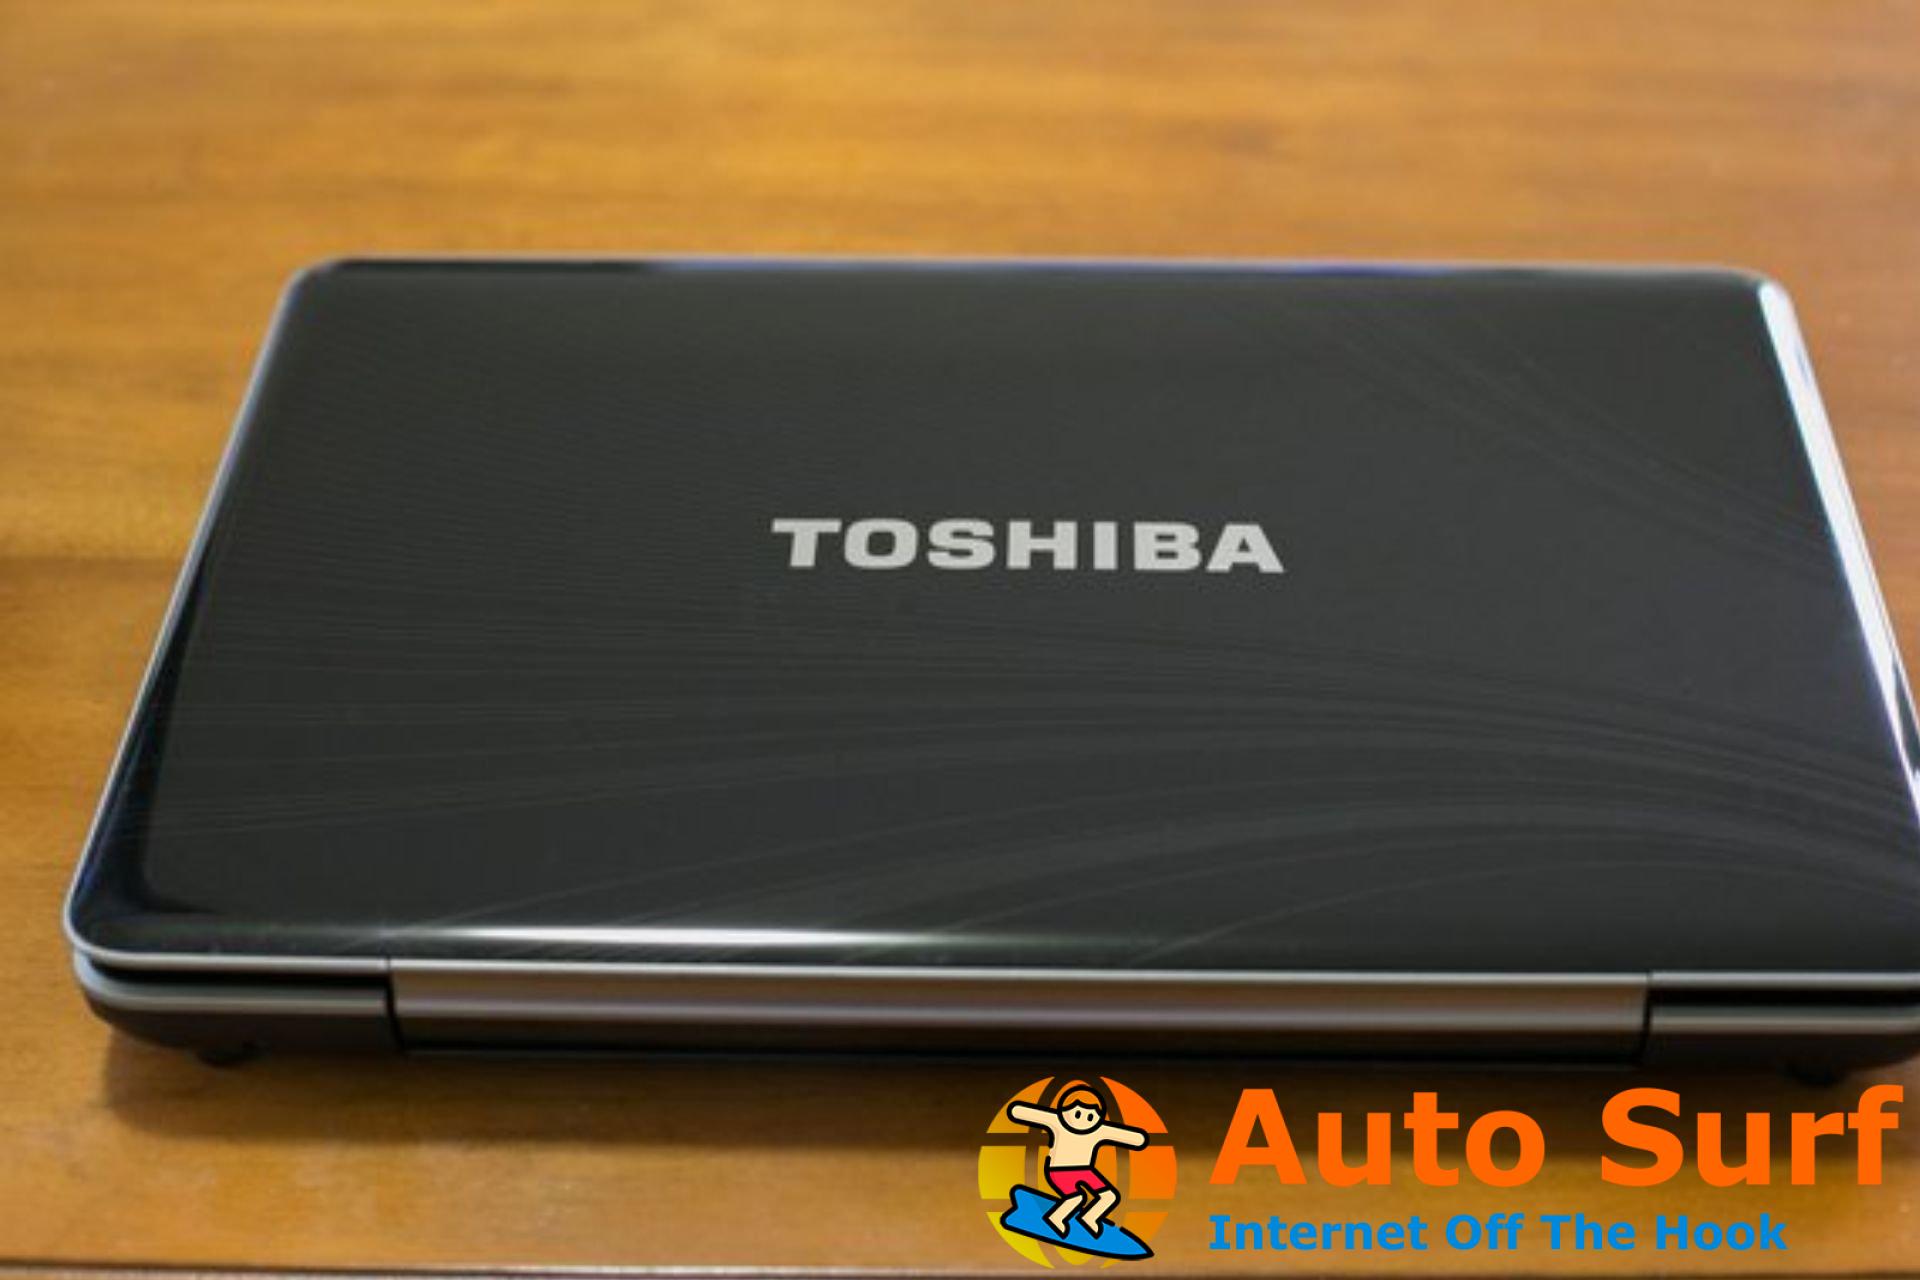 Pantalla negra de la computadora portátil Toshiba: 3 formas rápidas de solucionarlo